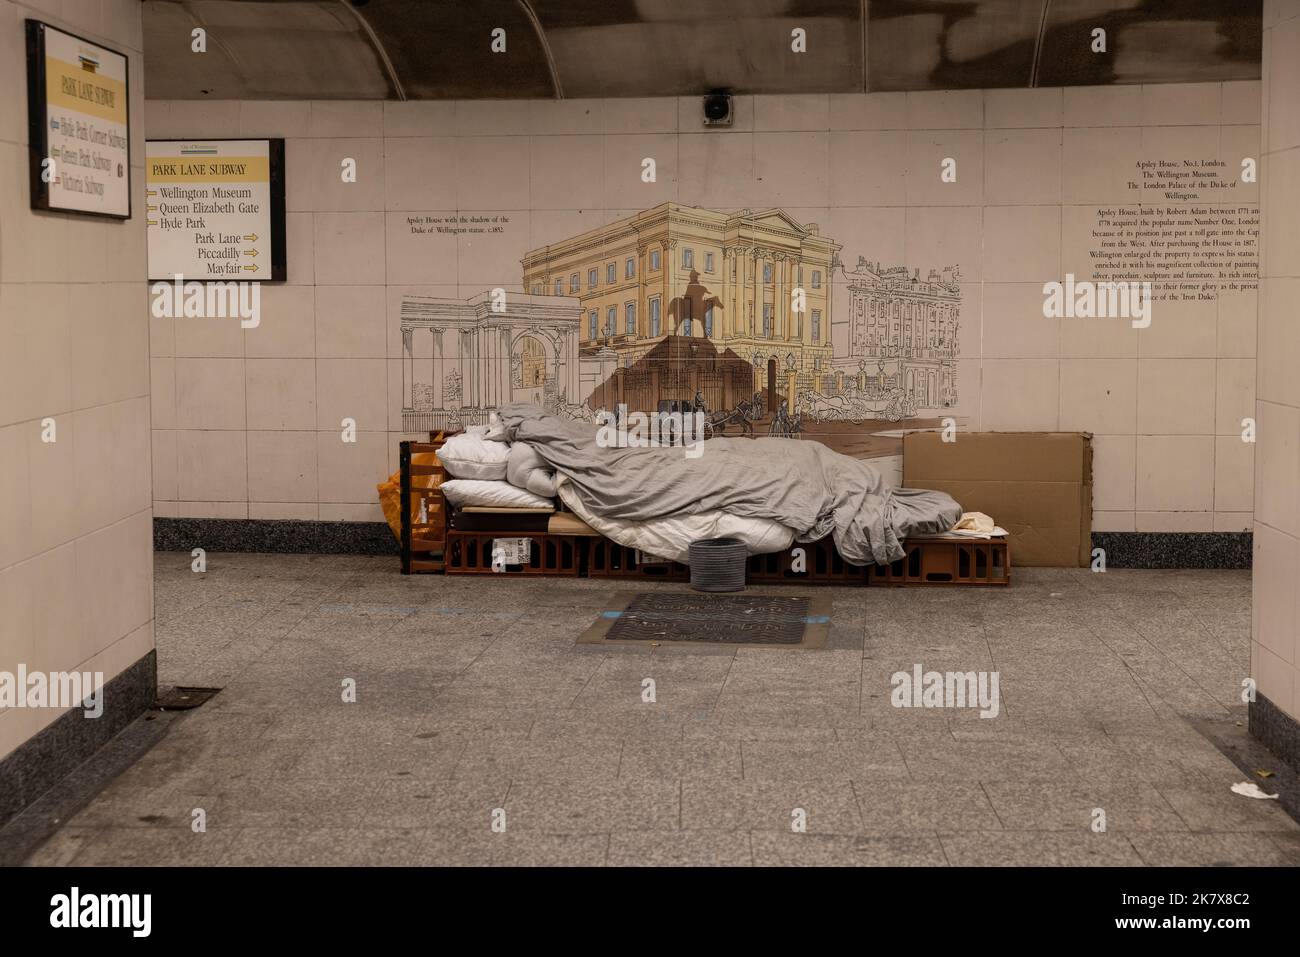 Sans-abri personne dort sur un lit temporaire assis sur une base en carton dans un métro souterrain, Hyde Park, Londres, Angleterre, Royaume-Uni Banque D'Images